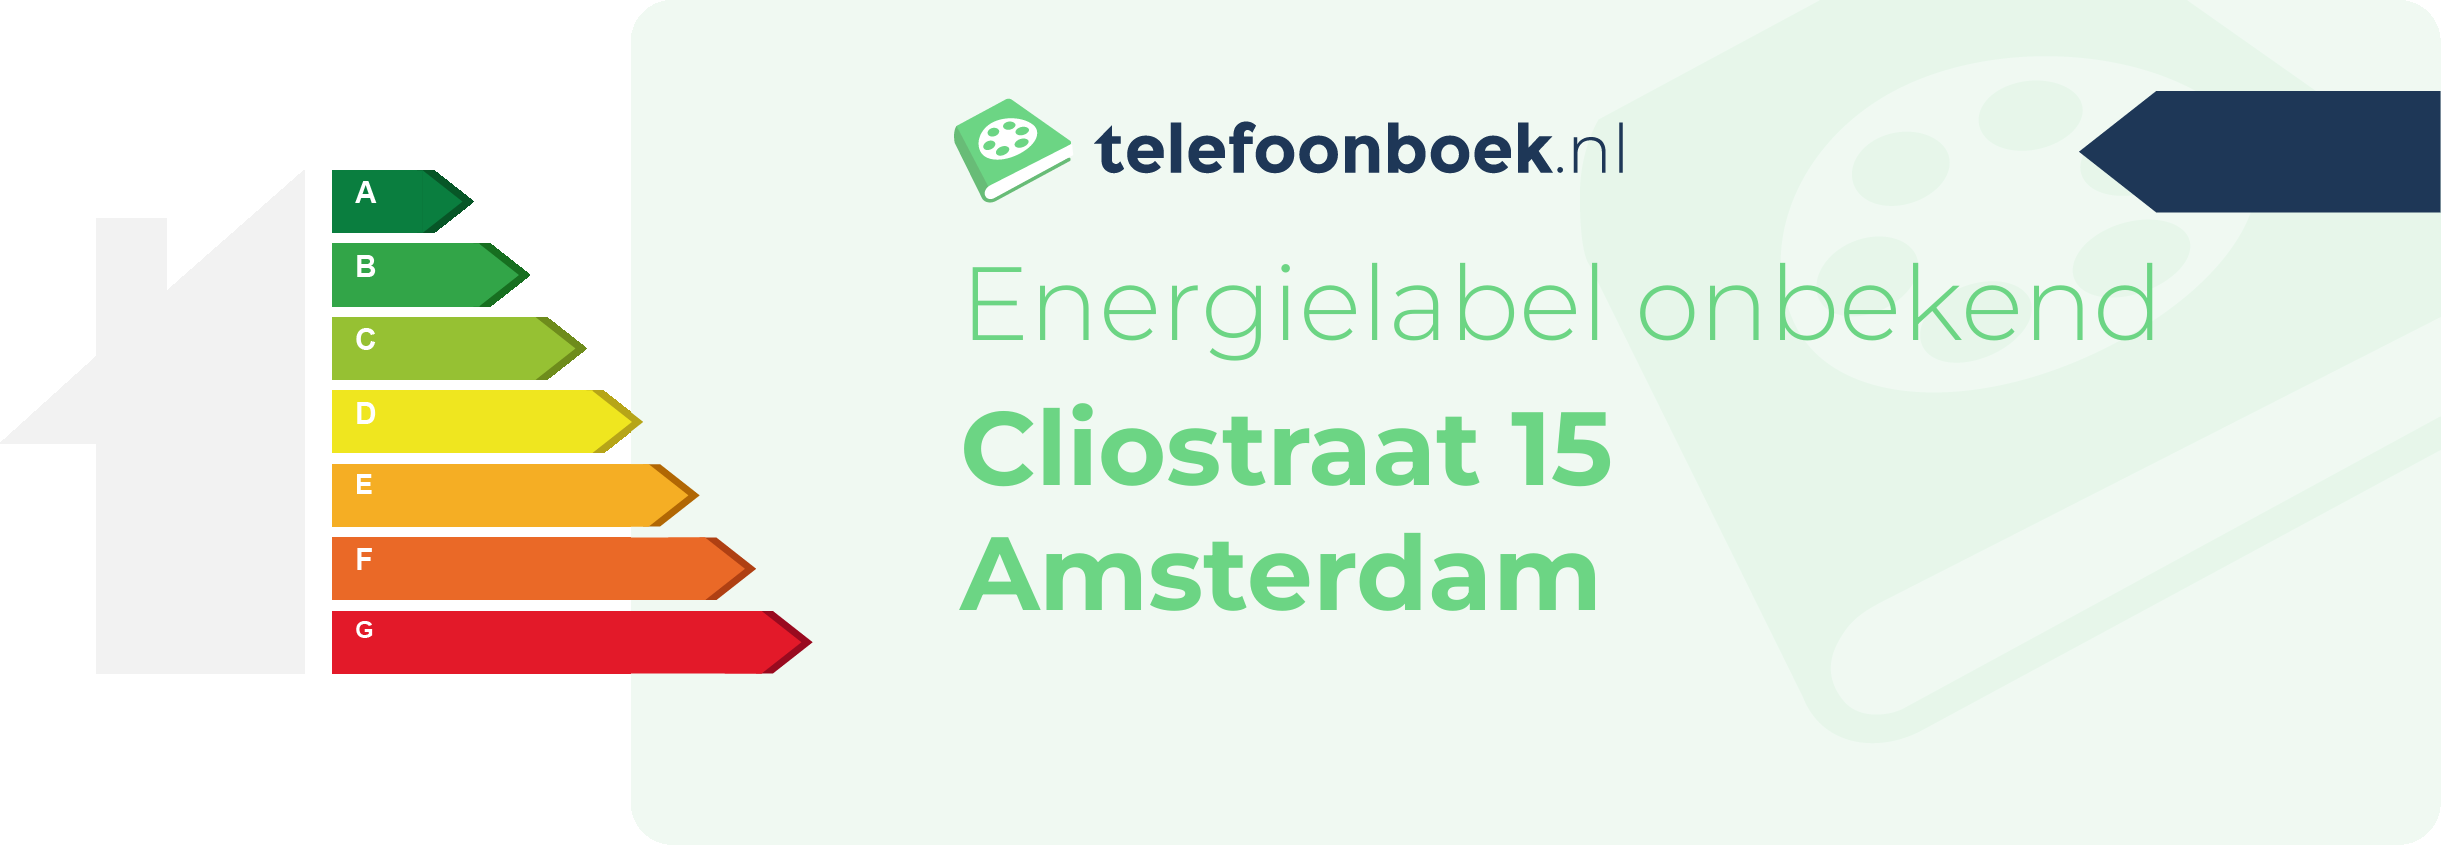 Energielabel Cliostraat 15 Amsterdam